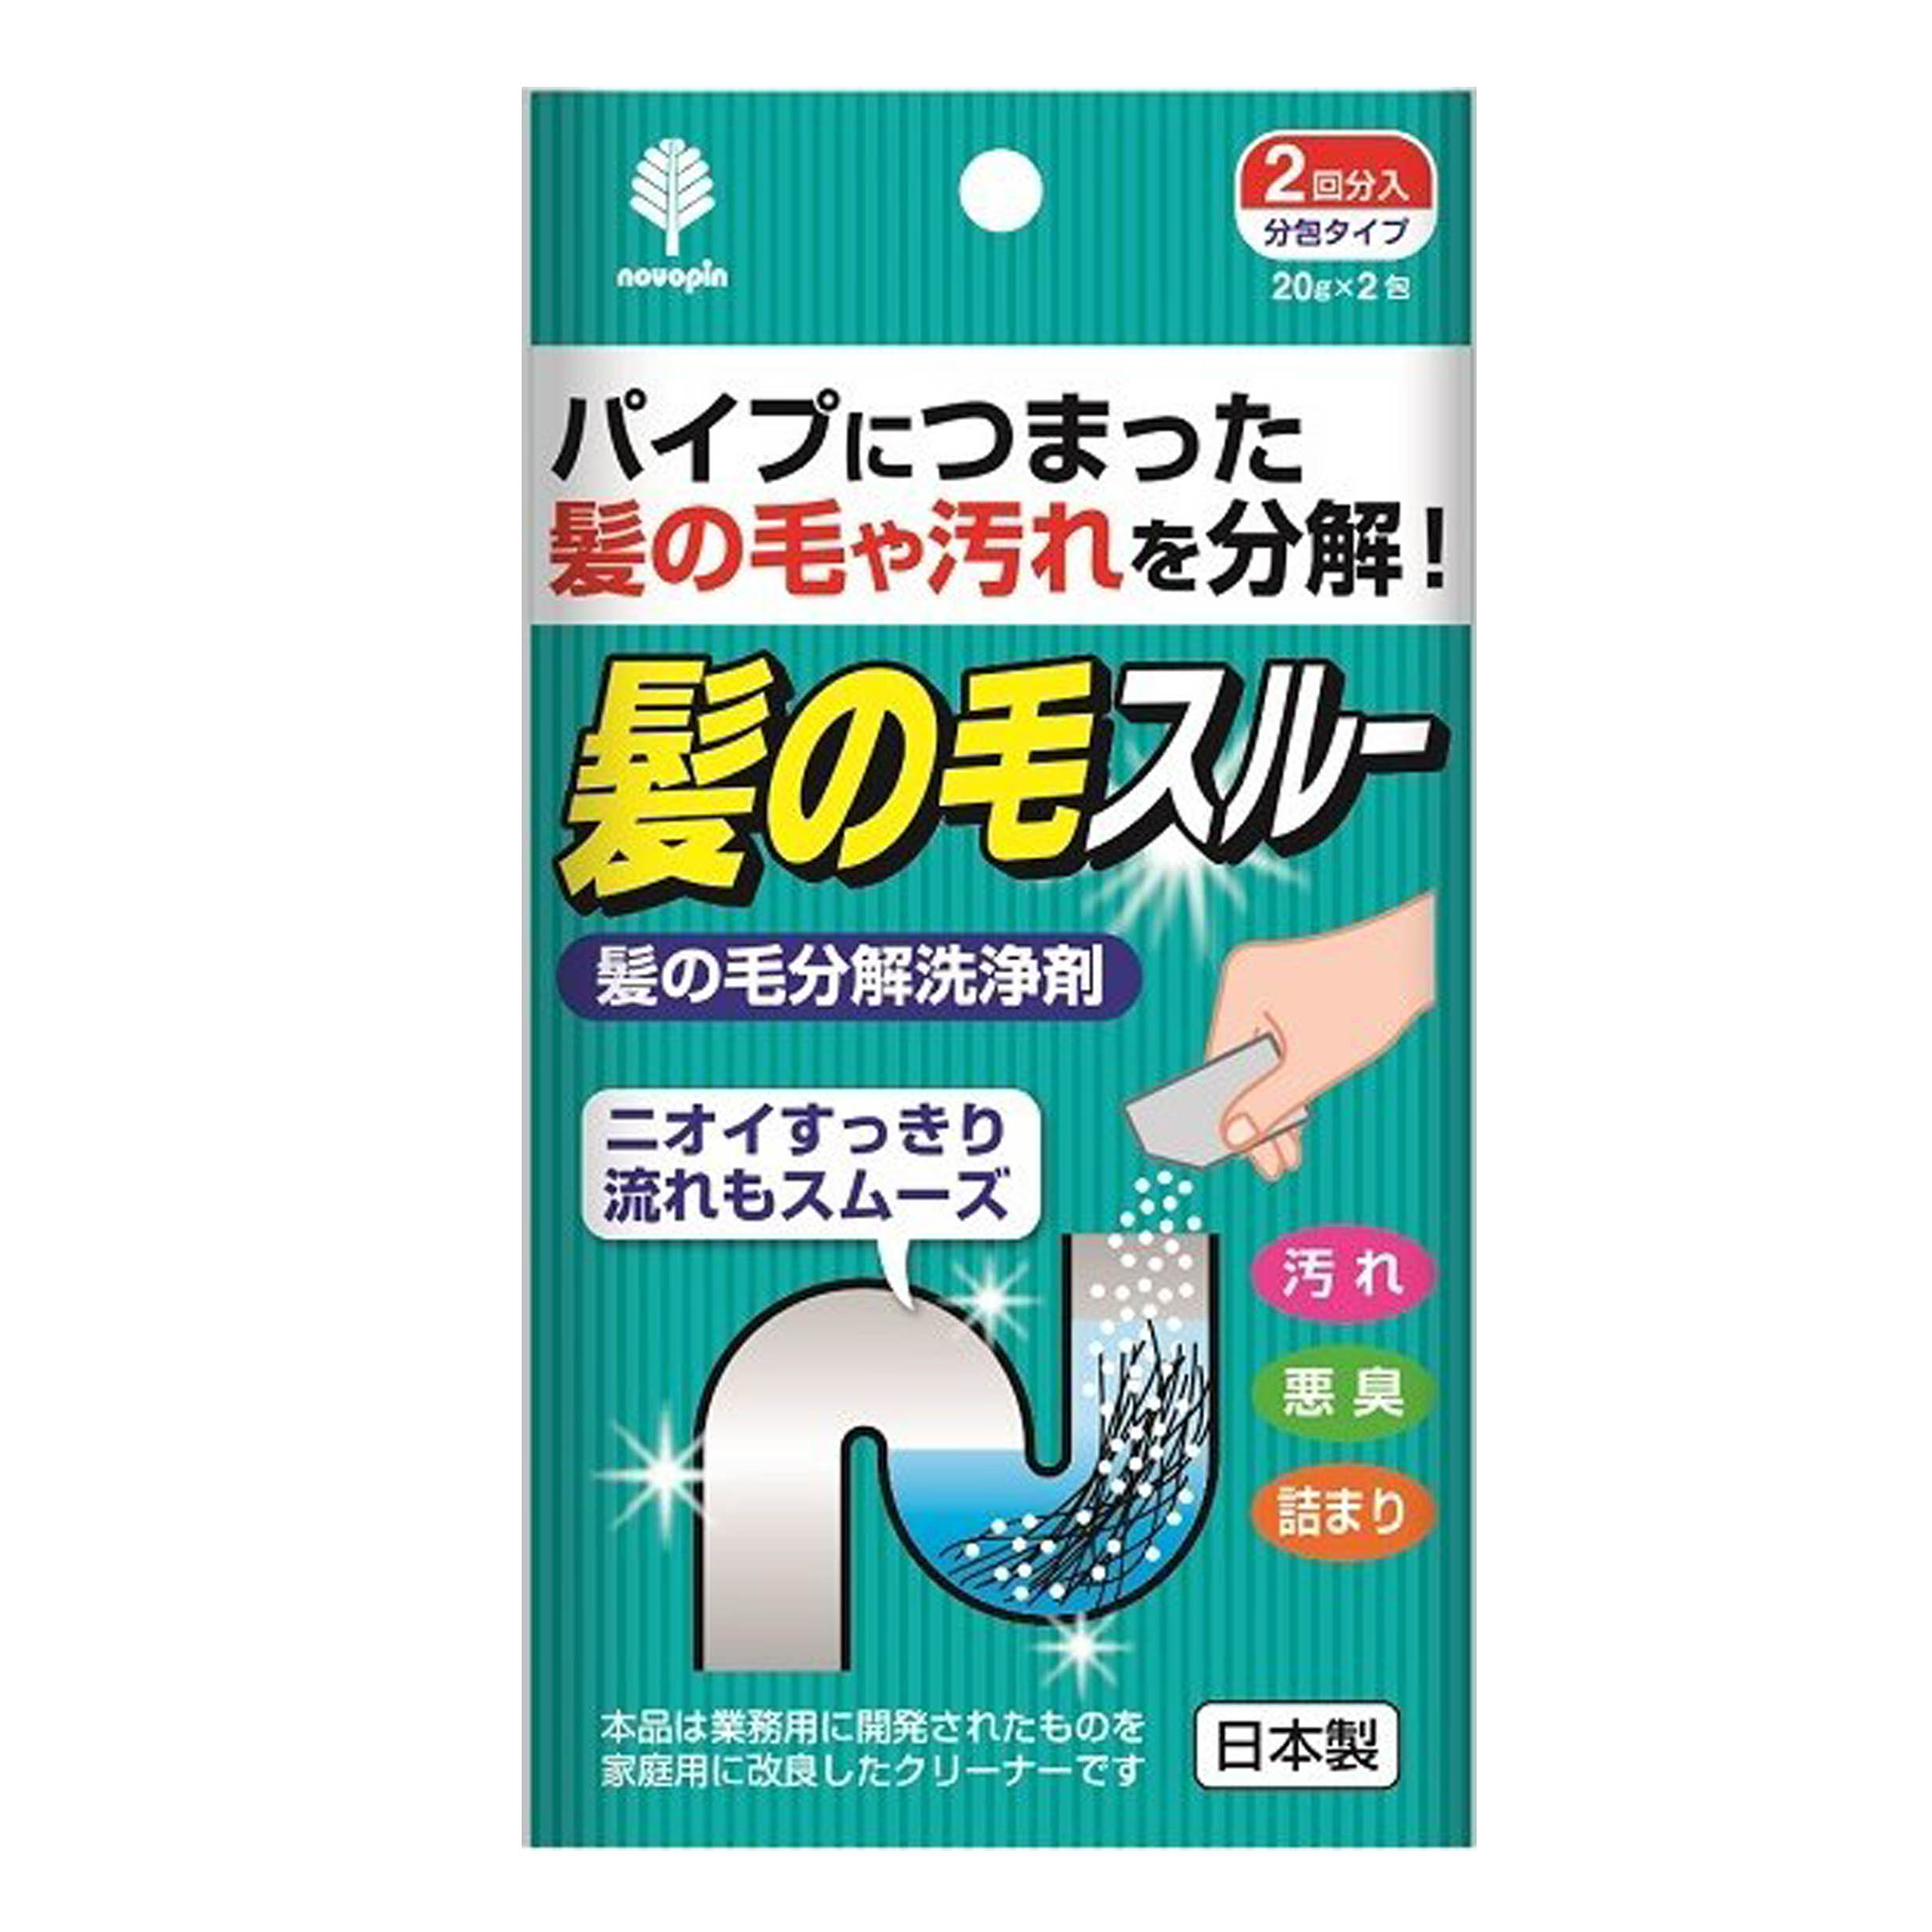 毛髮排水管清潔劑 2包-20g K-2144 NOVOPIN 日本製造進口